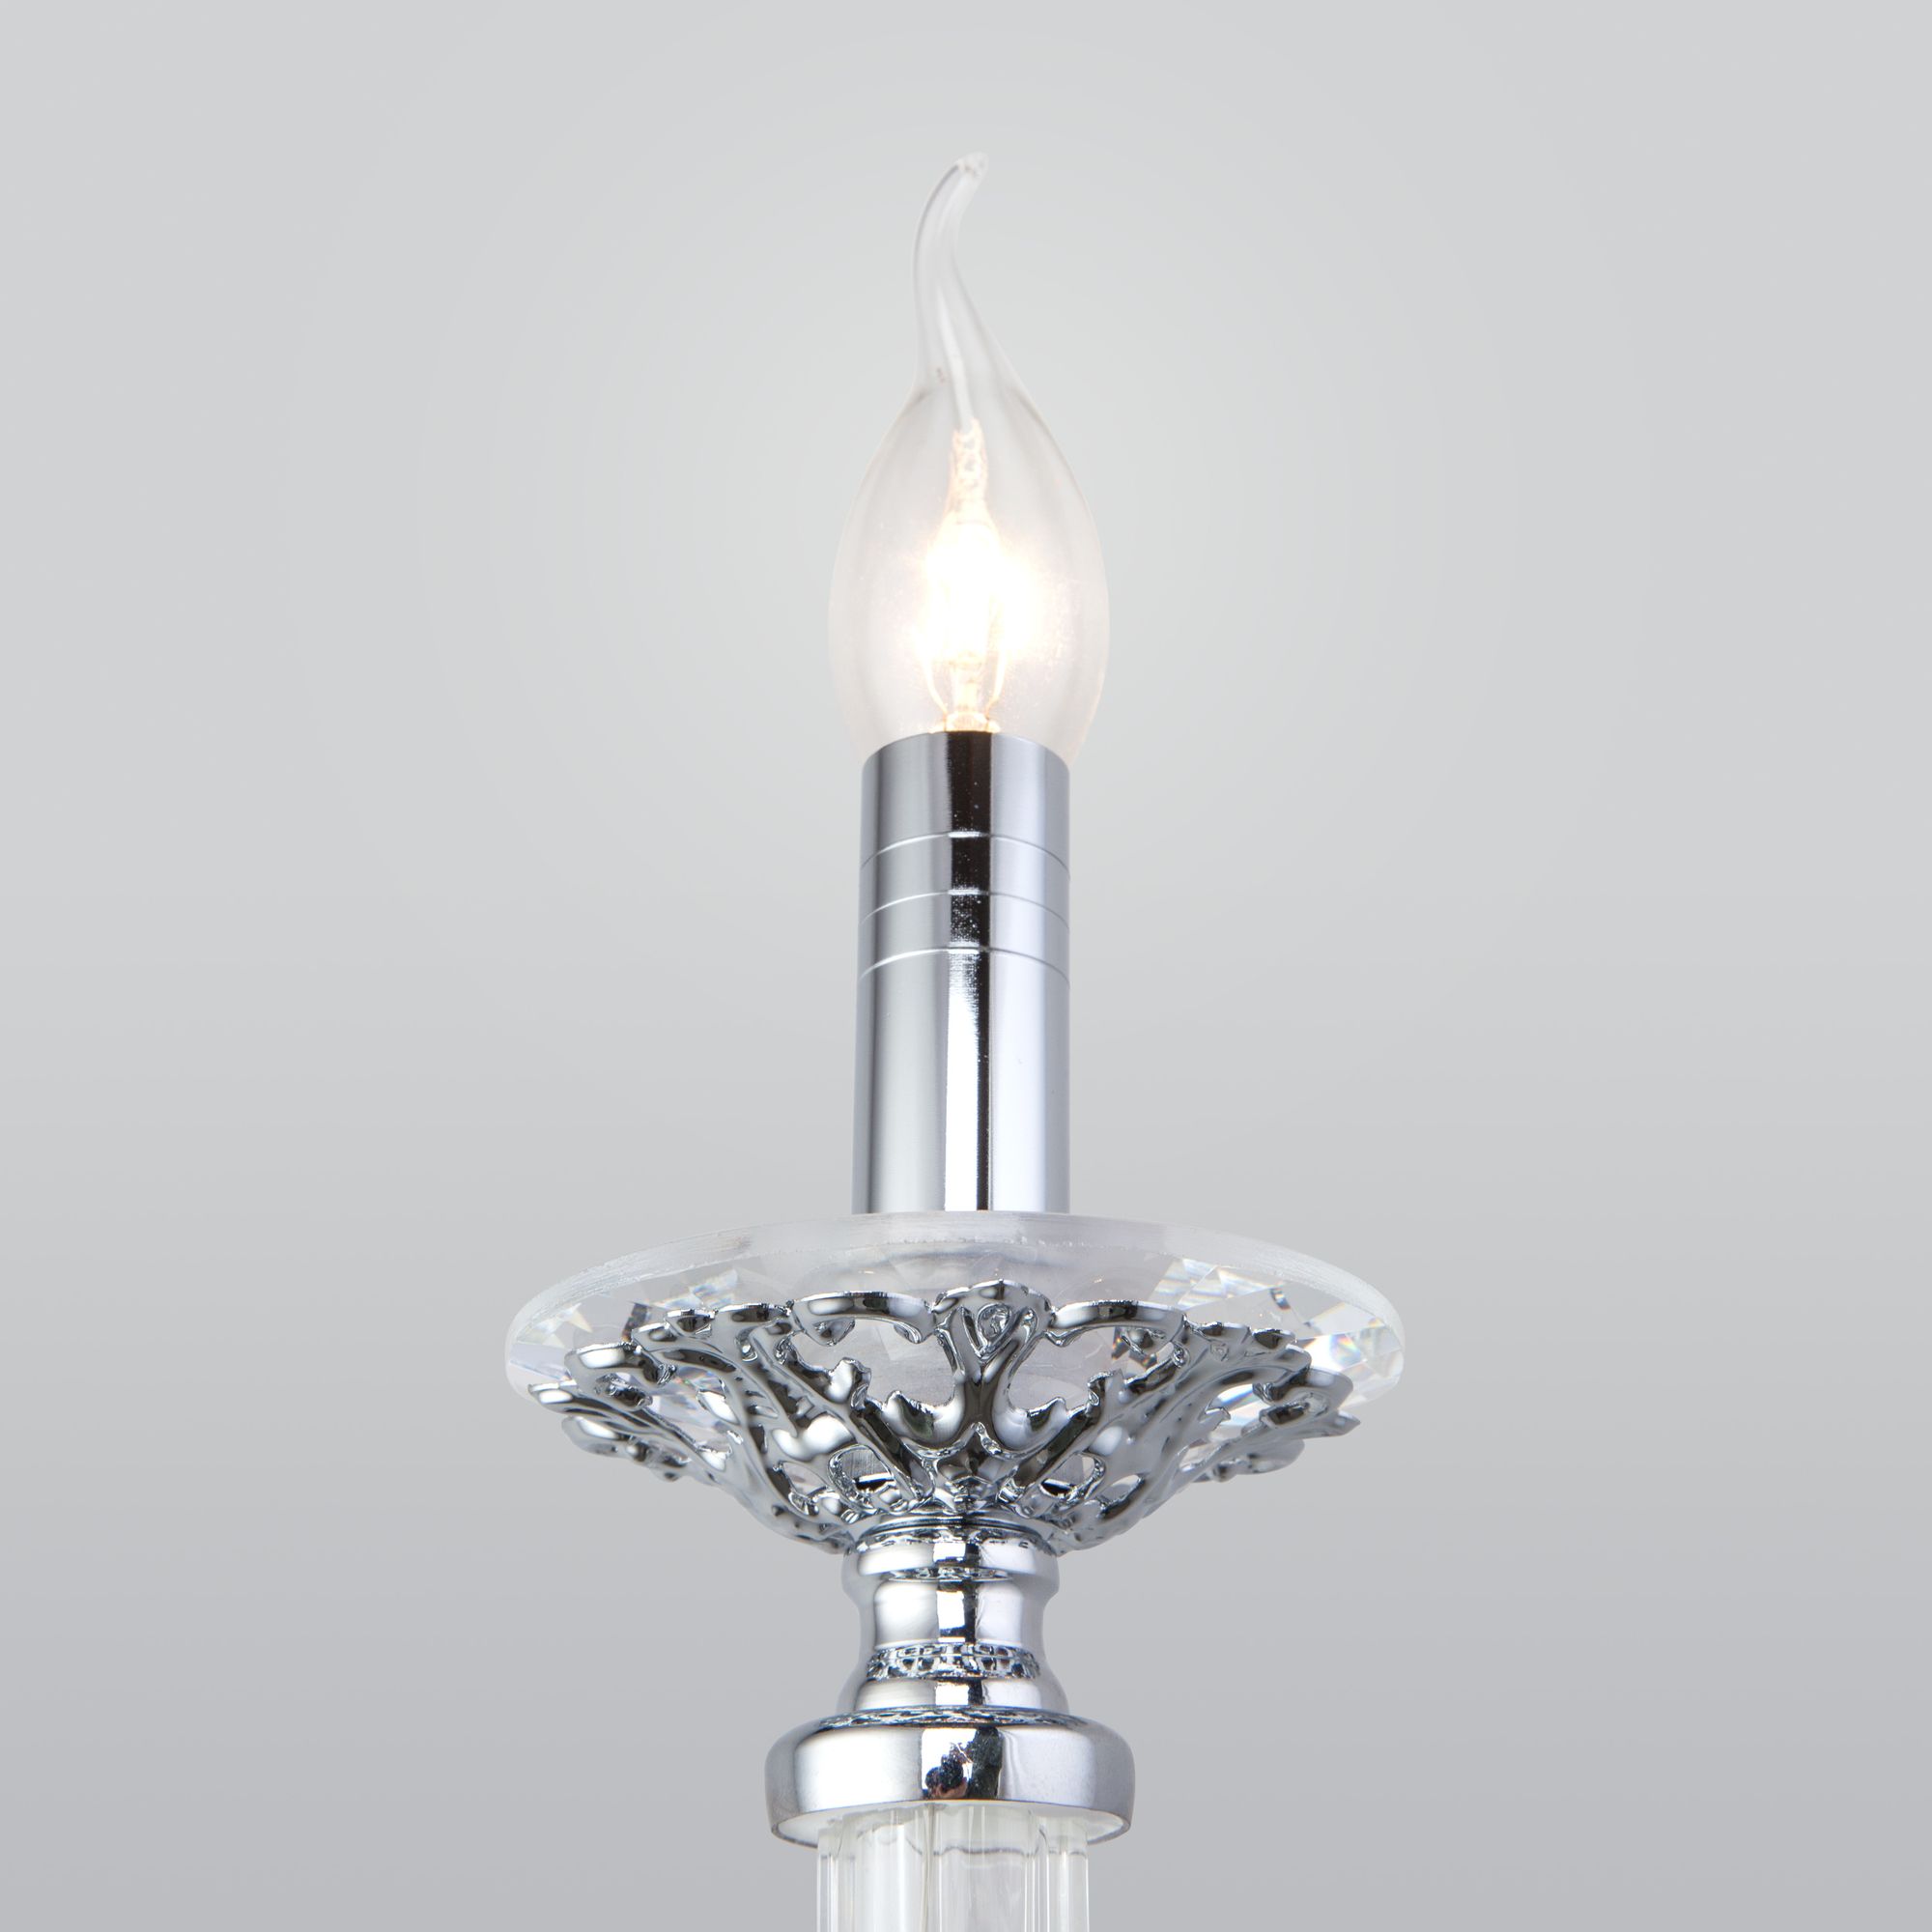 Настенный светильник в классическом стиле Bogate's Olenna 338/1. Фото 2